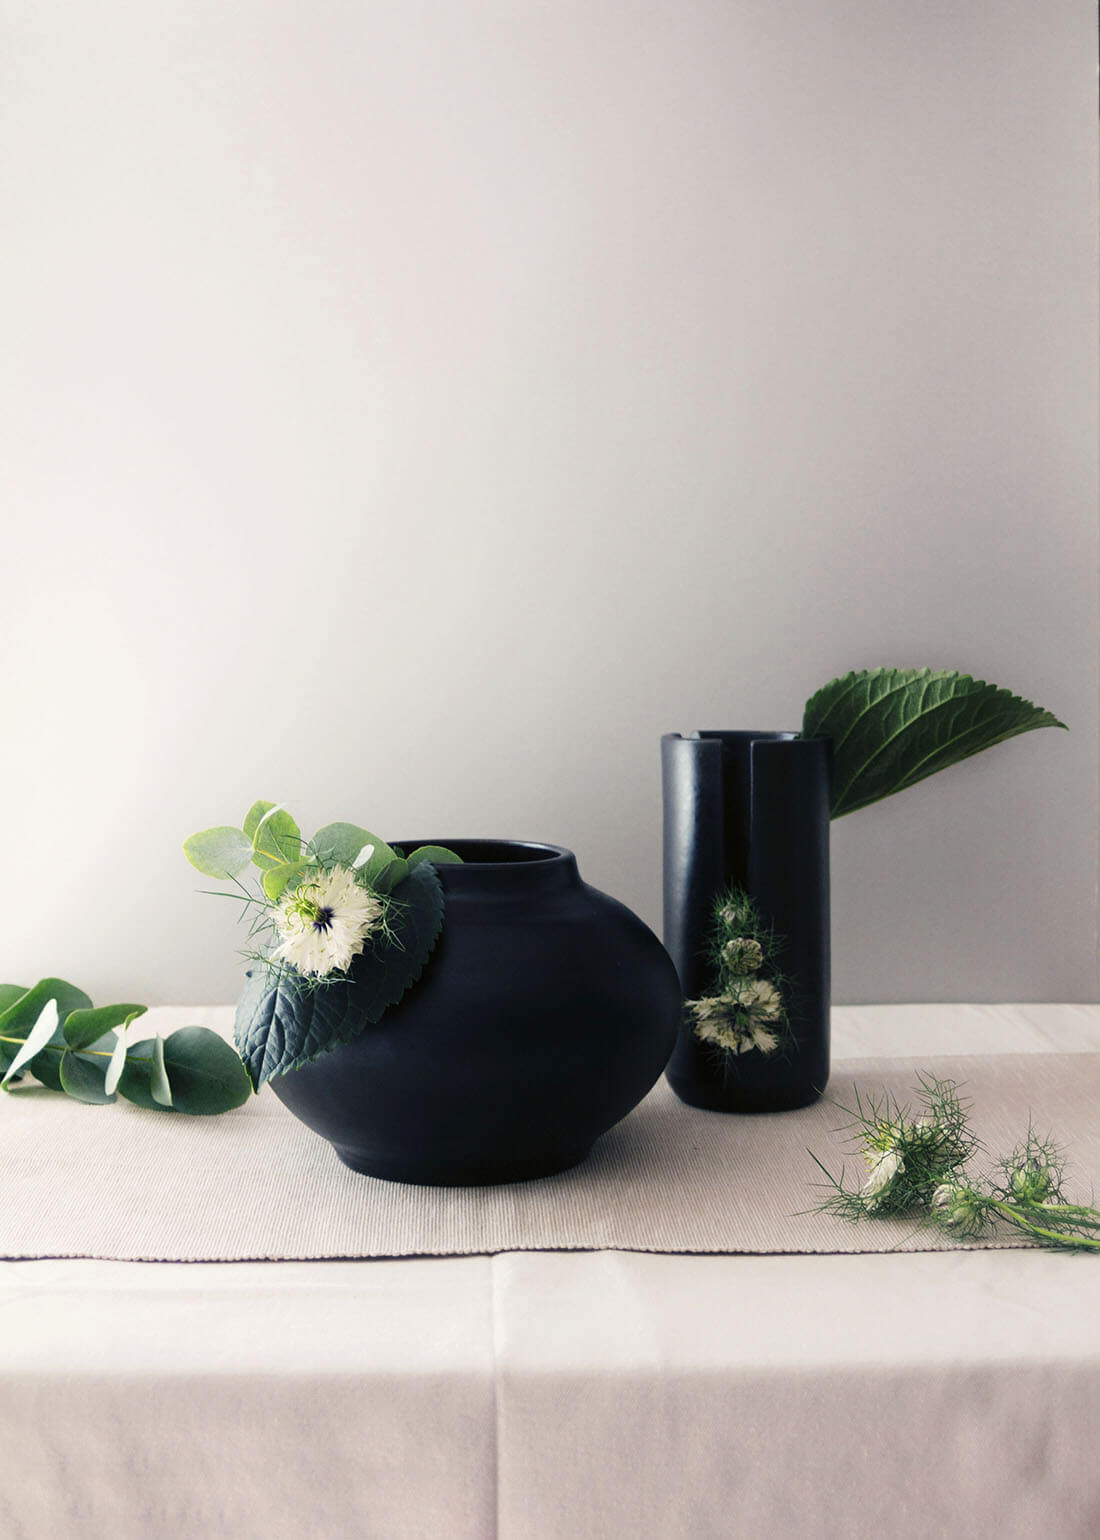 Flora collection, vasi decorativi con tagli by Marianna Milione designer